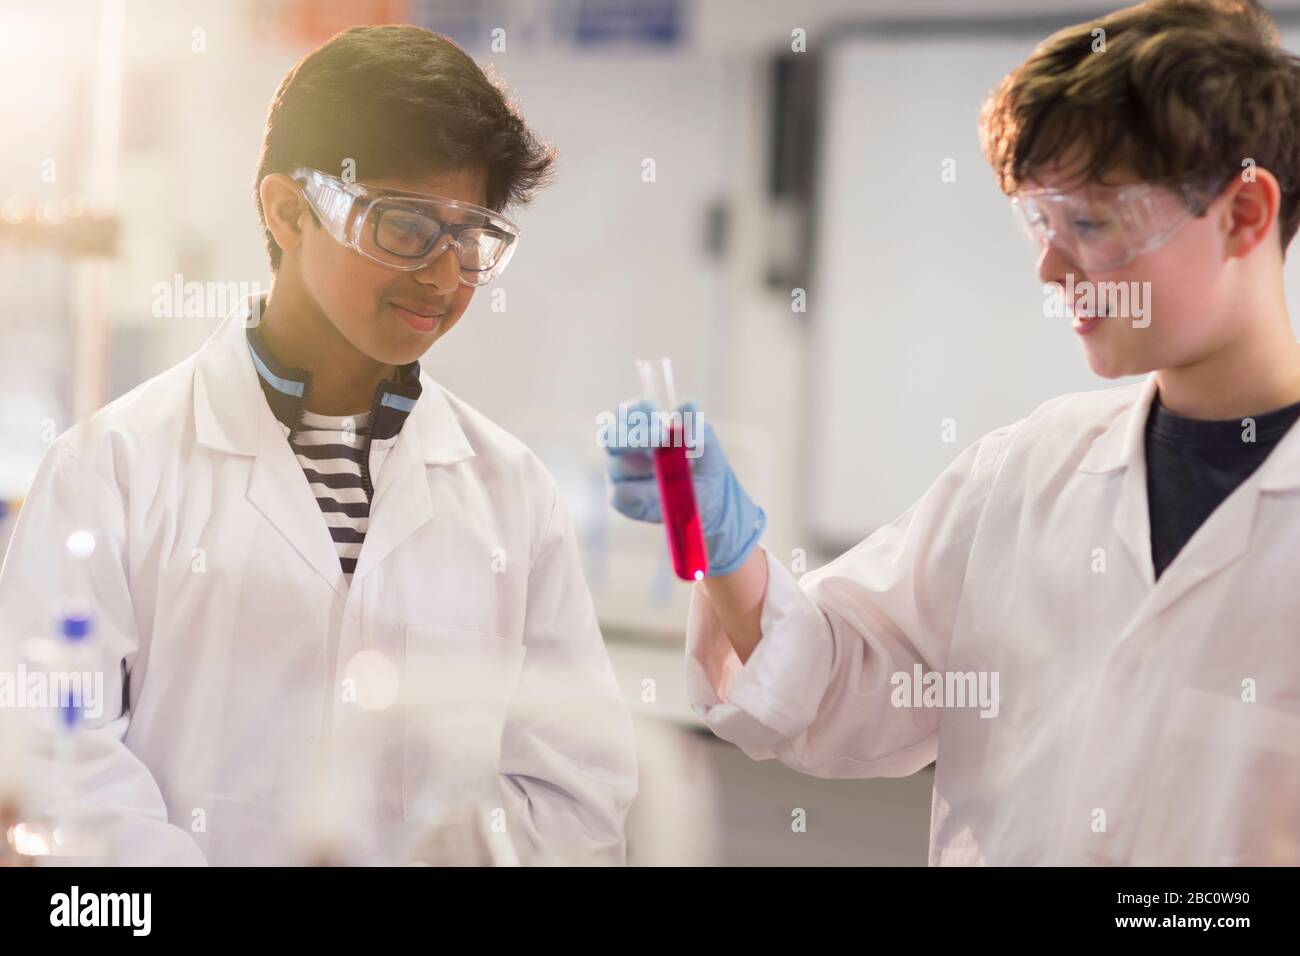 Junge Studenten untersuchen Flüssigkeit im Reagenzglas und führen wissenschaftliche Experimente im Laborunterricht durch Stockfoto